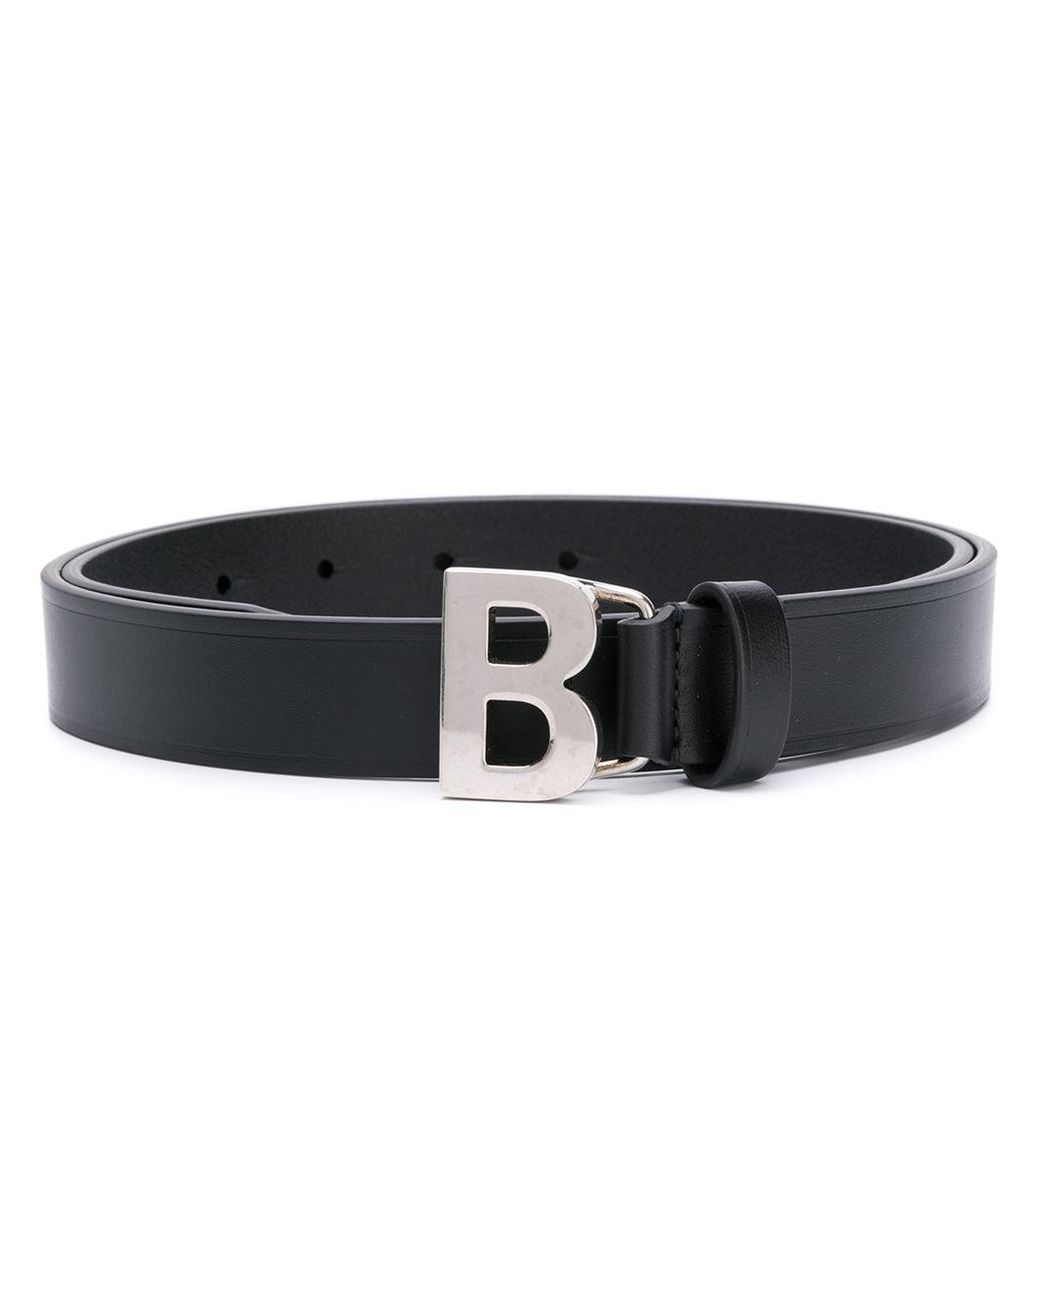 Balenciaga B Thin Belt in Black - Lyst